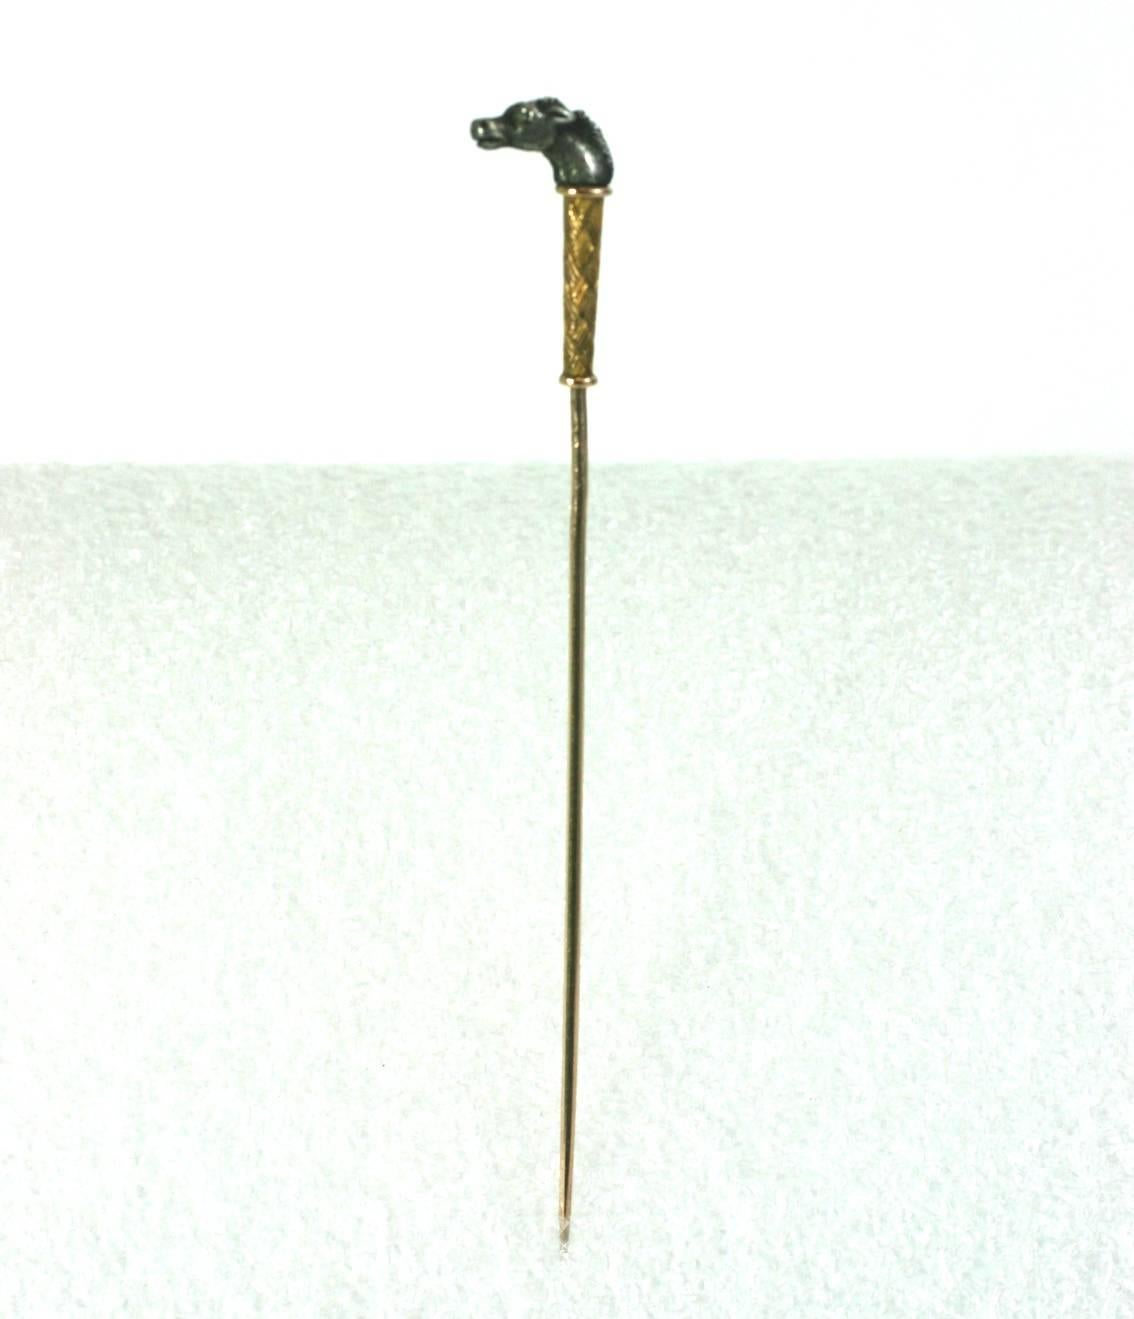 Epingle de Stick à tête de cheval victorienne conçue comme un bâton miniature. La tête de cheval finement détaillée est en sterling avec un œil en diamant taillé en rose. La garde en dessous a des détails complexes de vannerie en or. La tige de